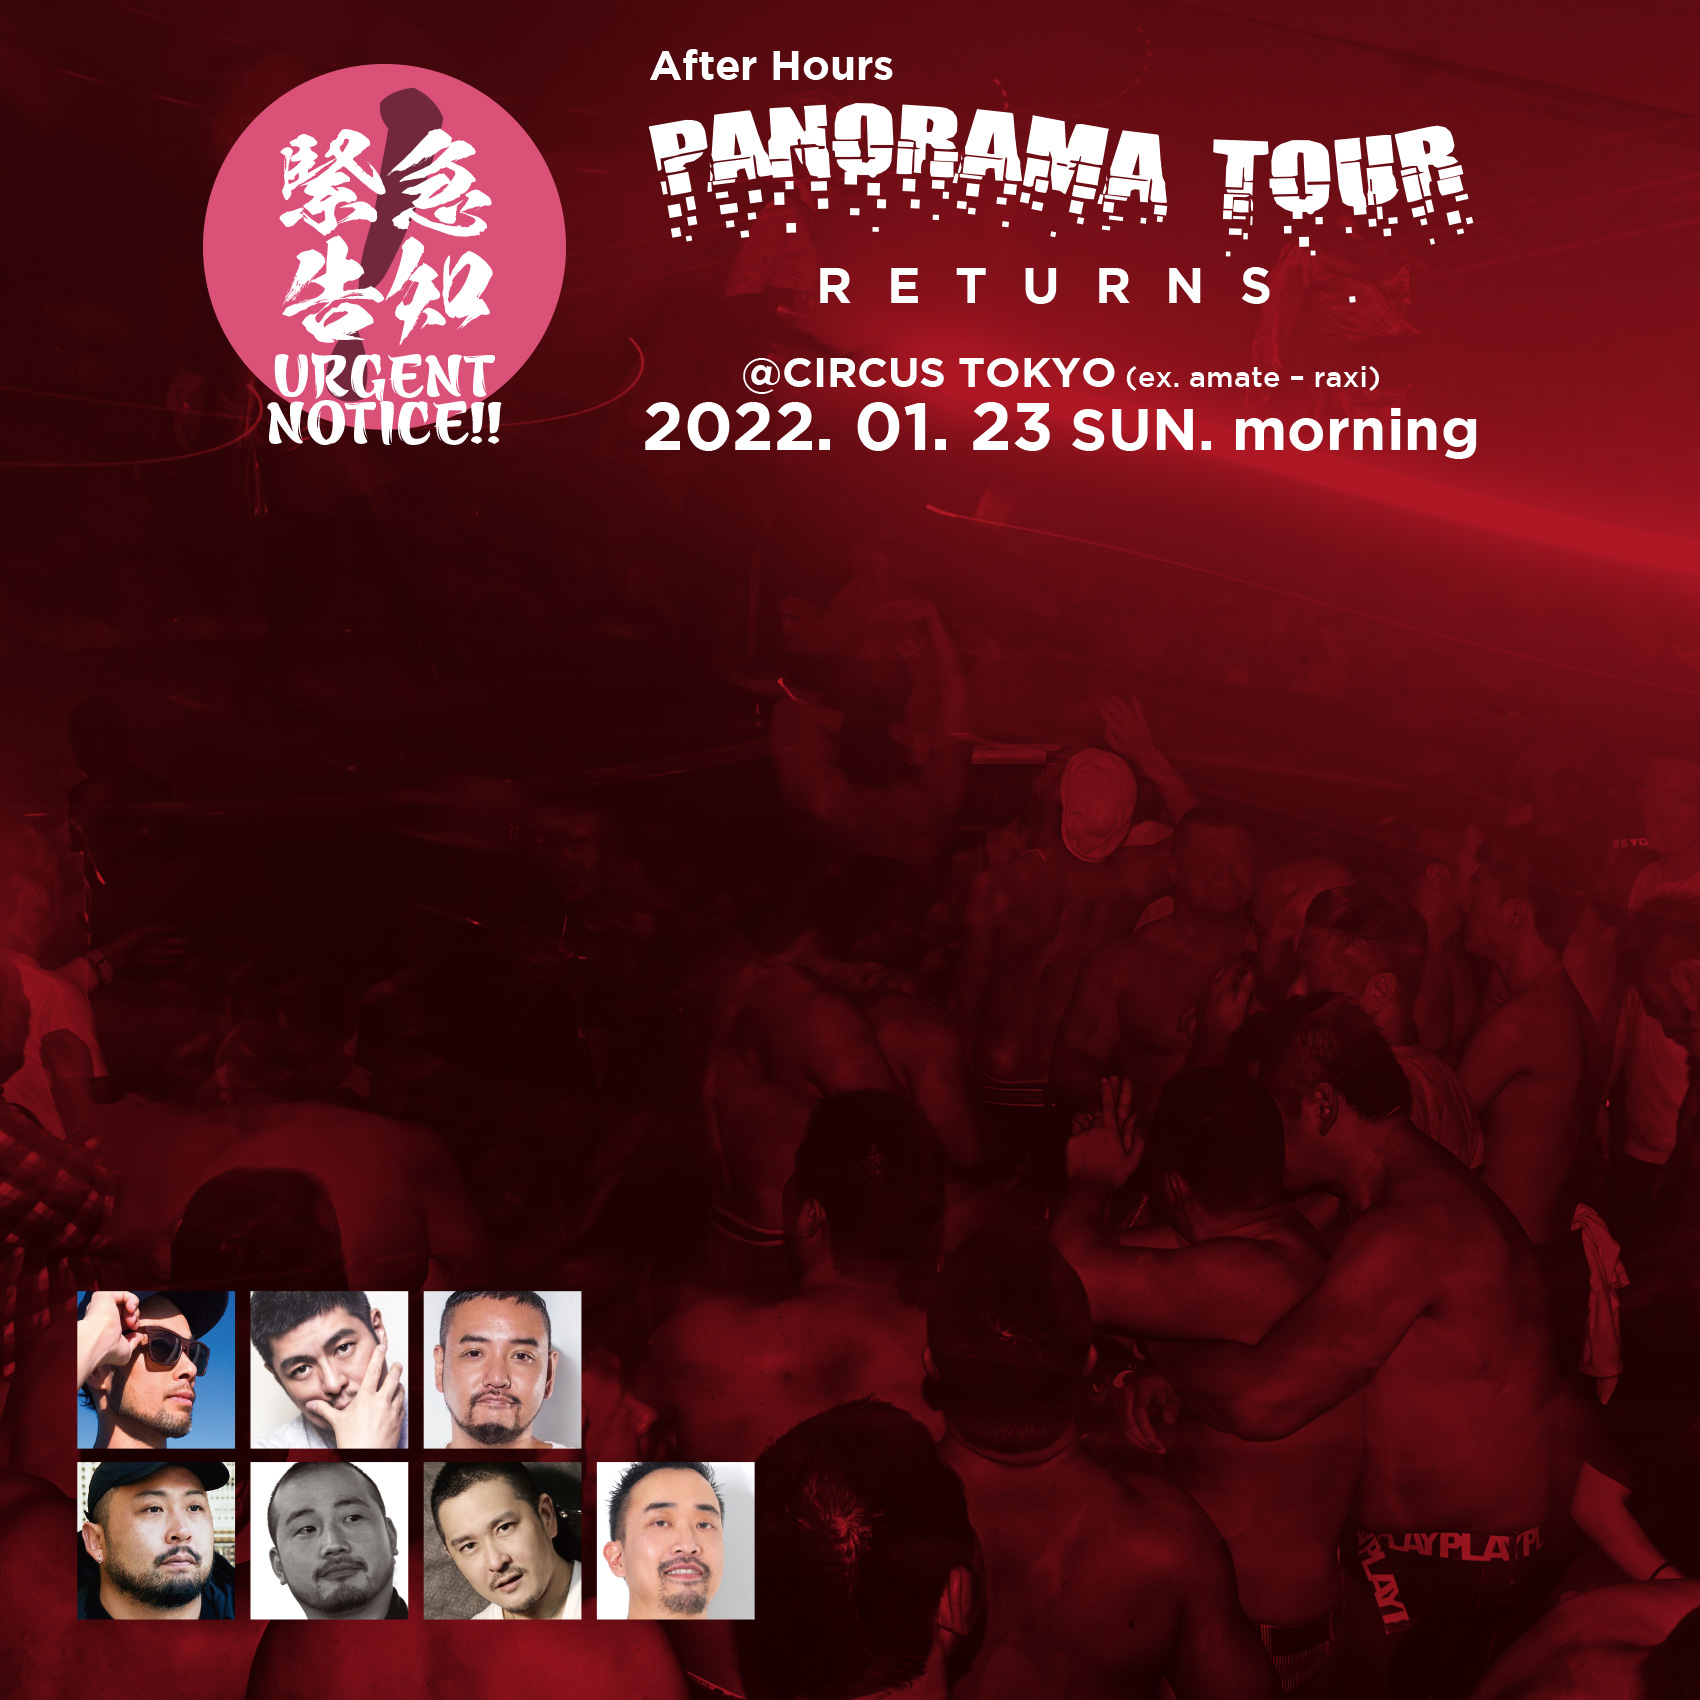 PANORAMA TOUR